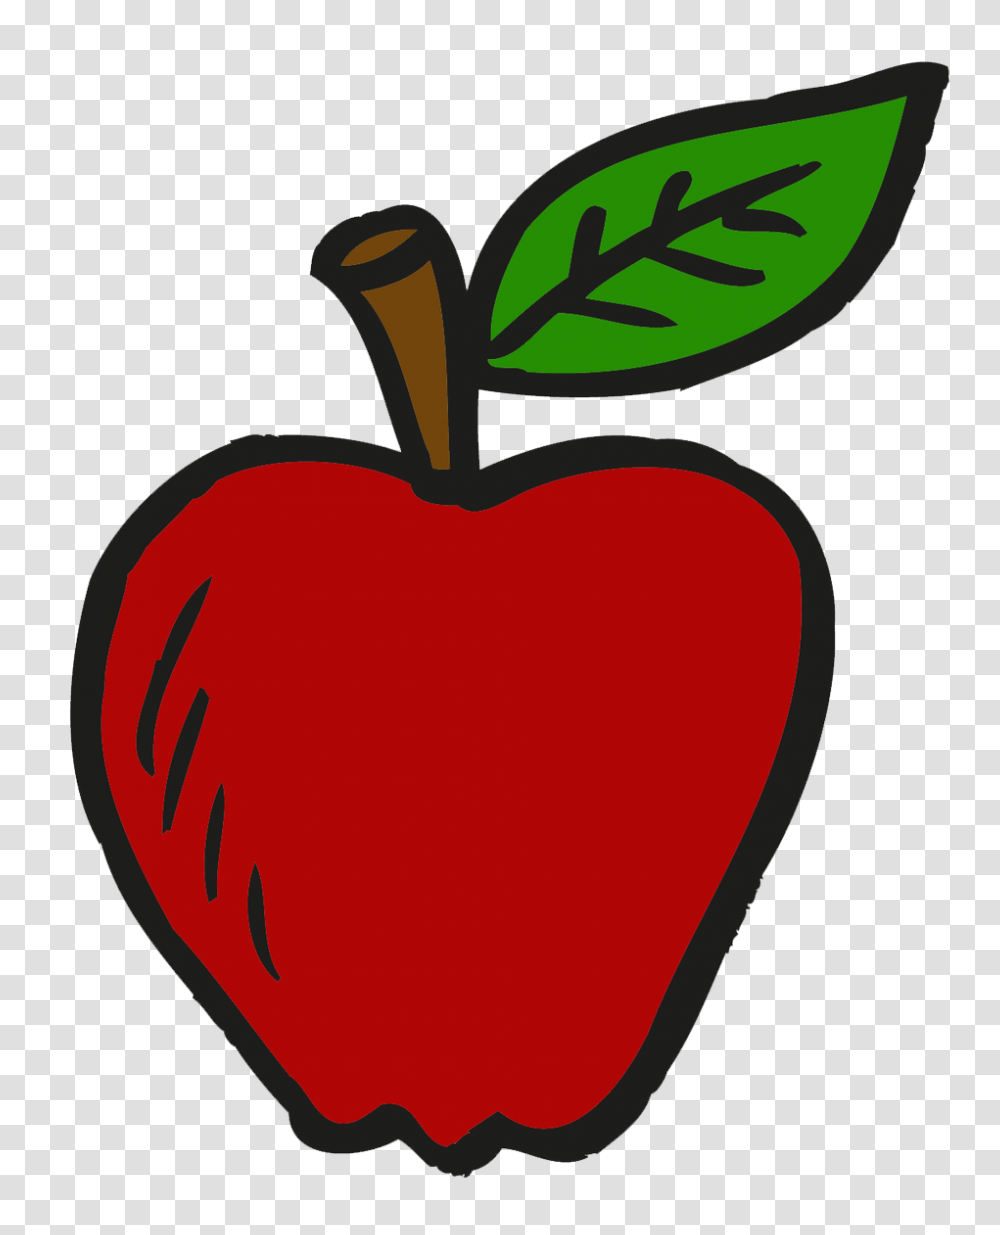 Icarol Software On Twitter It, Plant, Fruit, Food, Apple Transparent Png